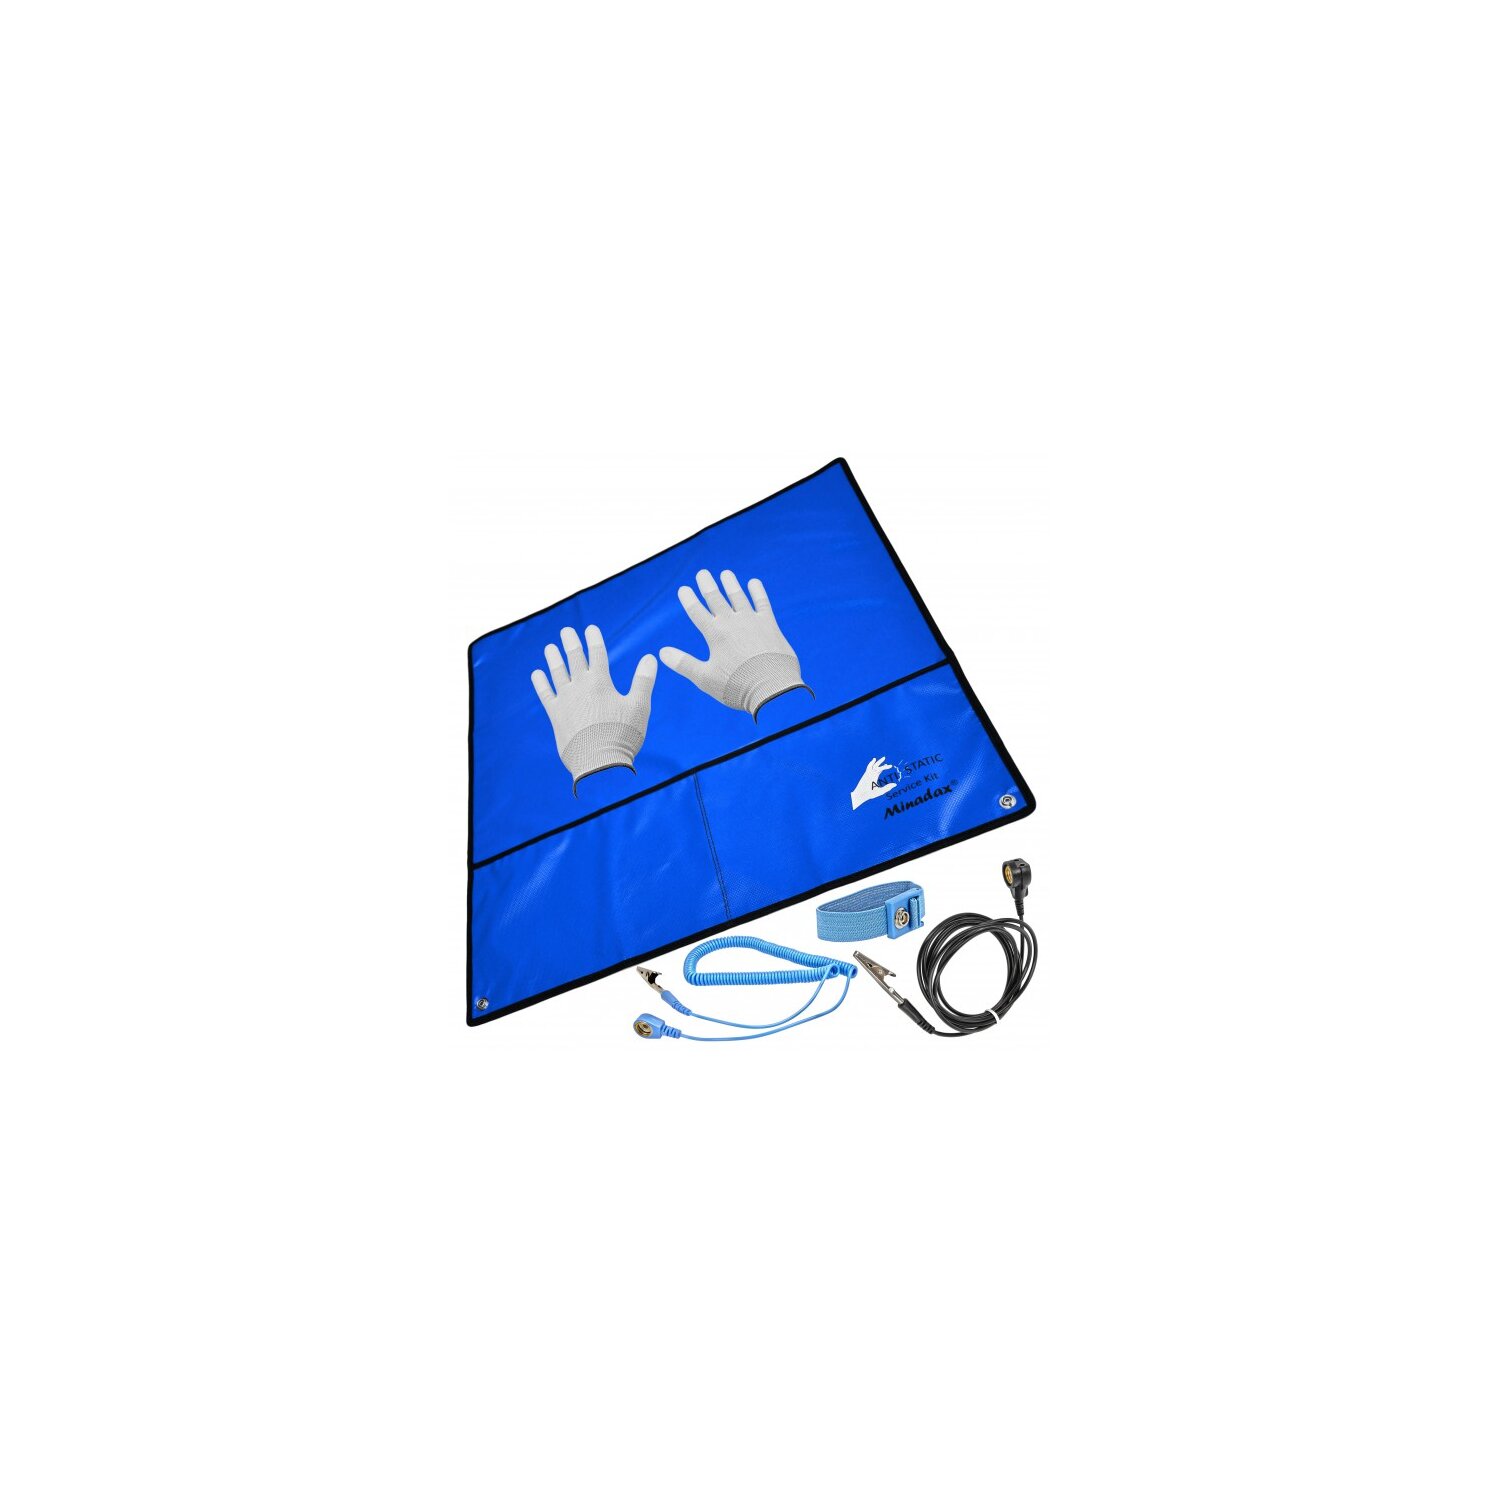 Minadax&reg; 60 x 60cm Antistatik-Set: Antistatikmatte in Blau Handgelenksschlaufe und Erdungskabel + Antistatik Handschuhe - Fuer ein sicheres Arbeiten und Schutz Ihrer Bauteile vor Entladungsschaeden